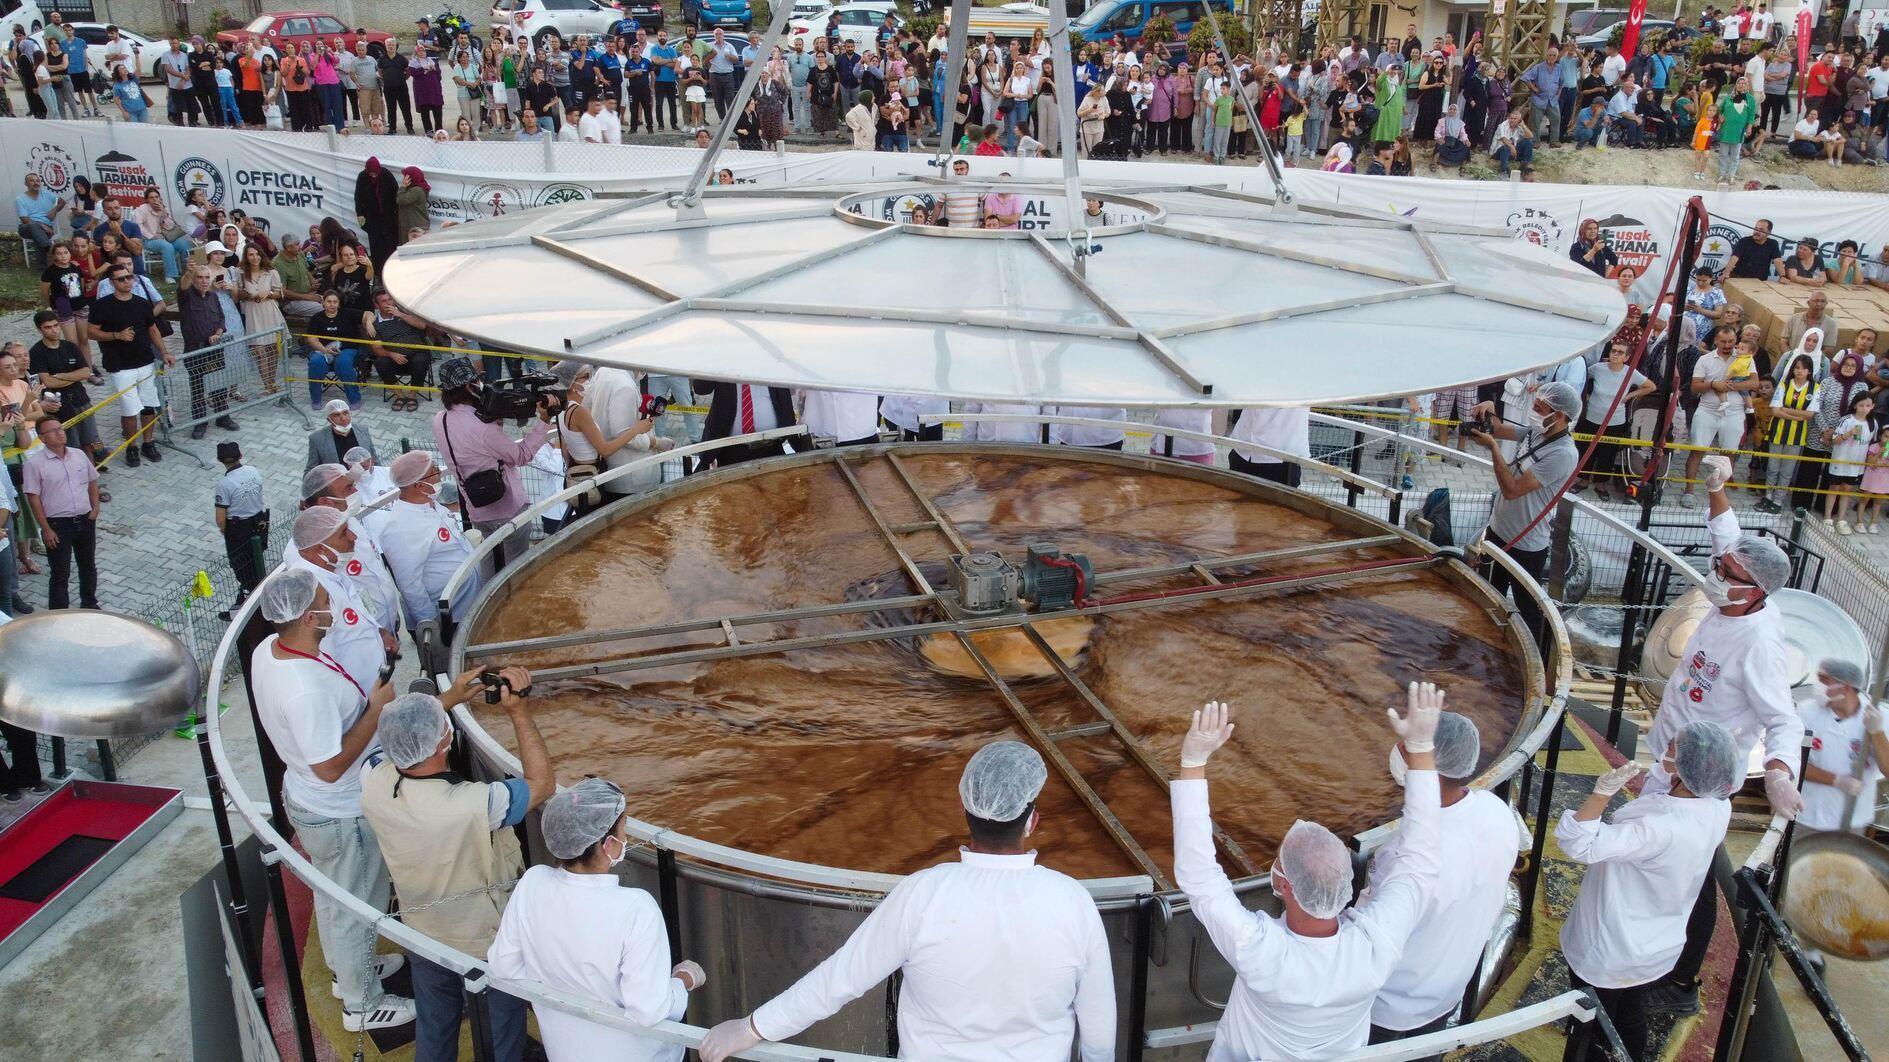 Tarhana breekt Guinness-record met grootste kom soep